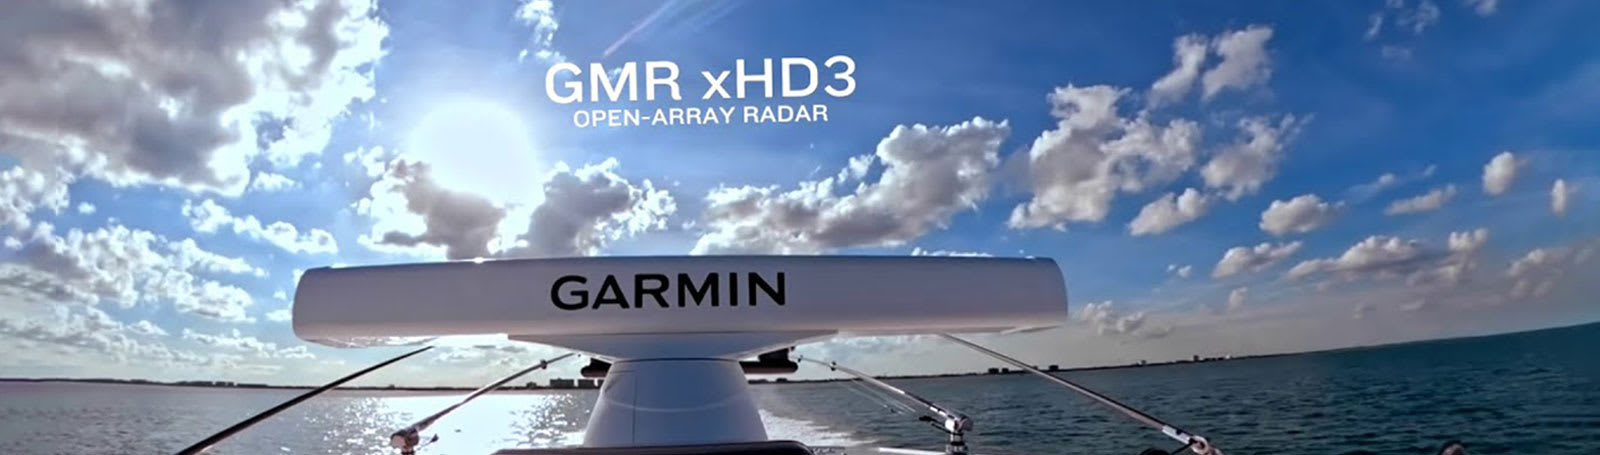 Garmin Radar GMR 434 xHD3 Åpen msokkel 4ft 133cm 4kW 72nm 2448RPM K100001224